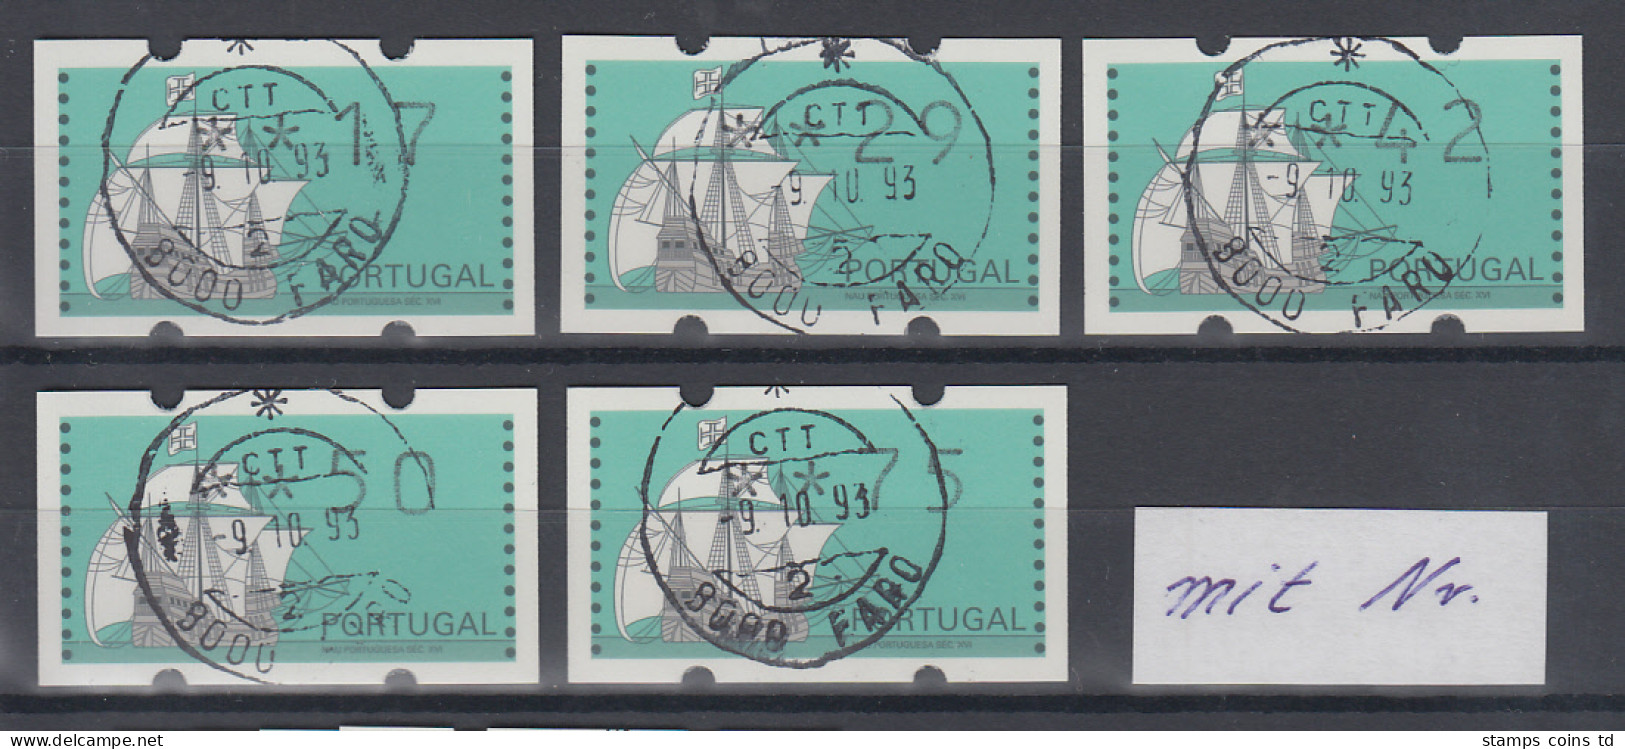 Portugal Klüssendorf ATM Segelschiff Nau Satz 17-29-42-50-75 ET-O Mit Zählnummer - Machine Labels [ATM]